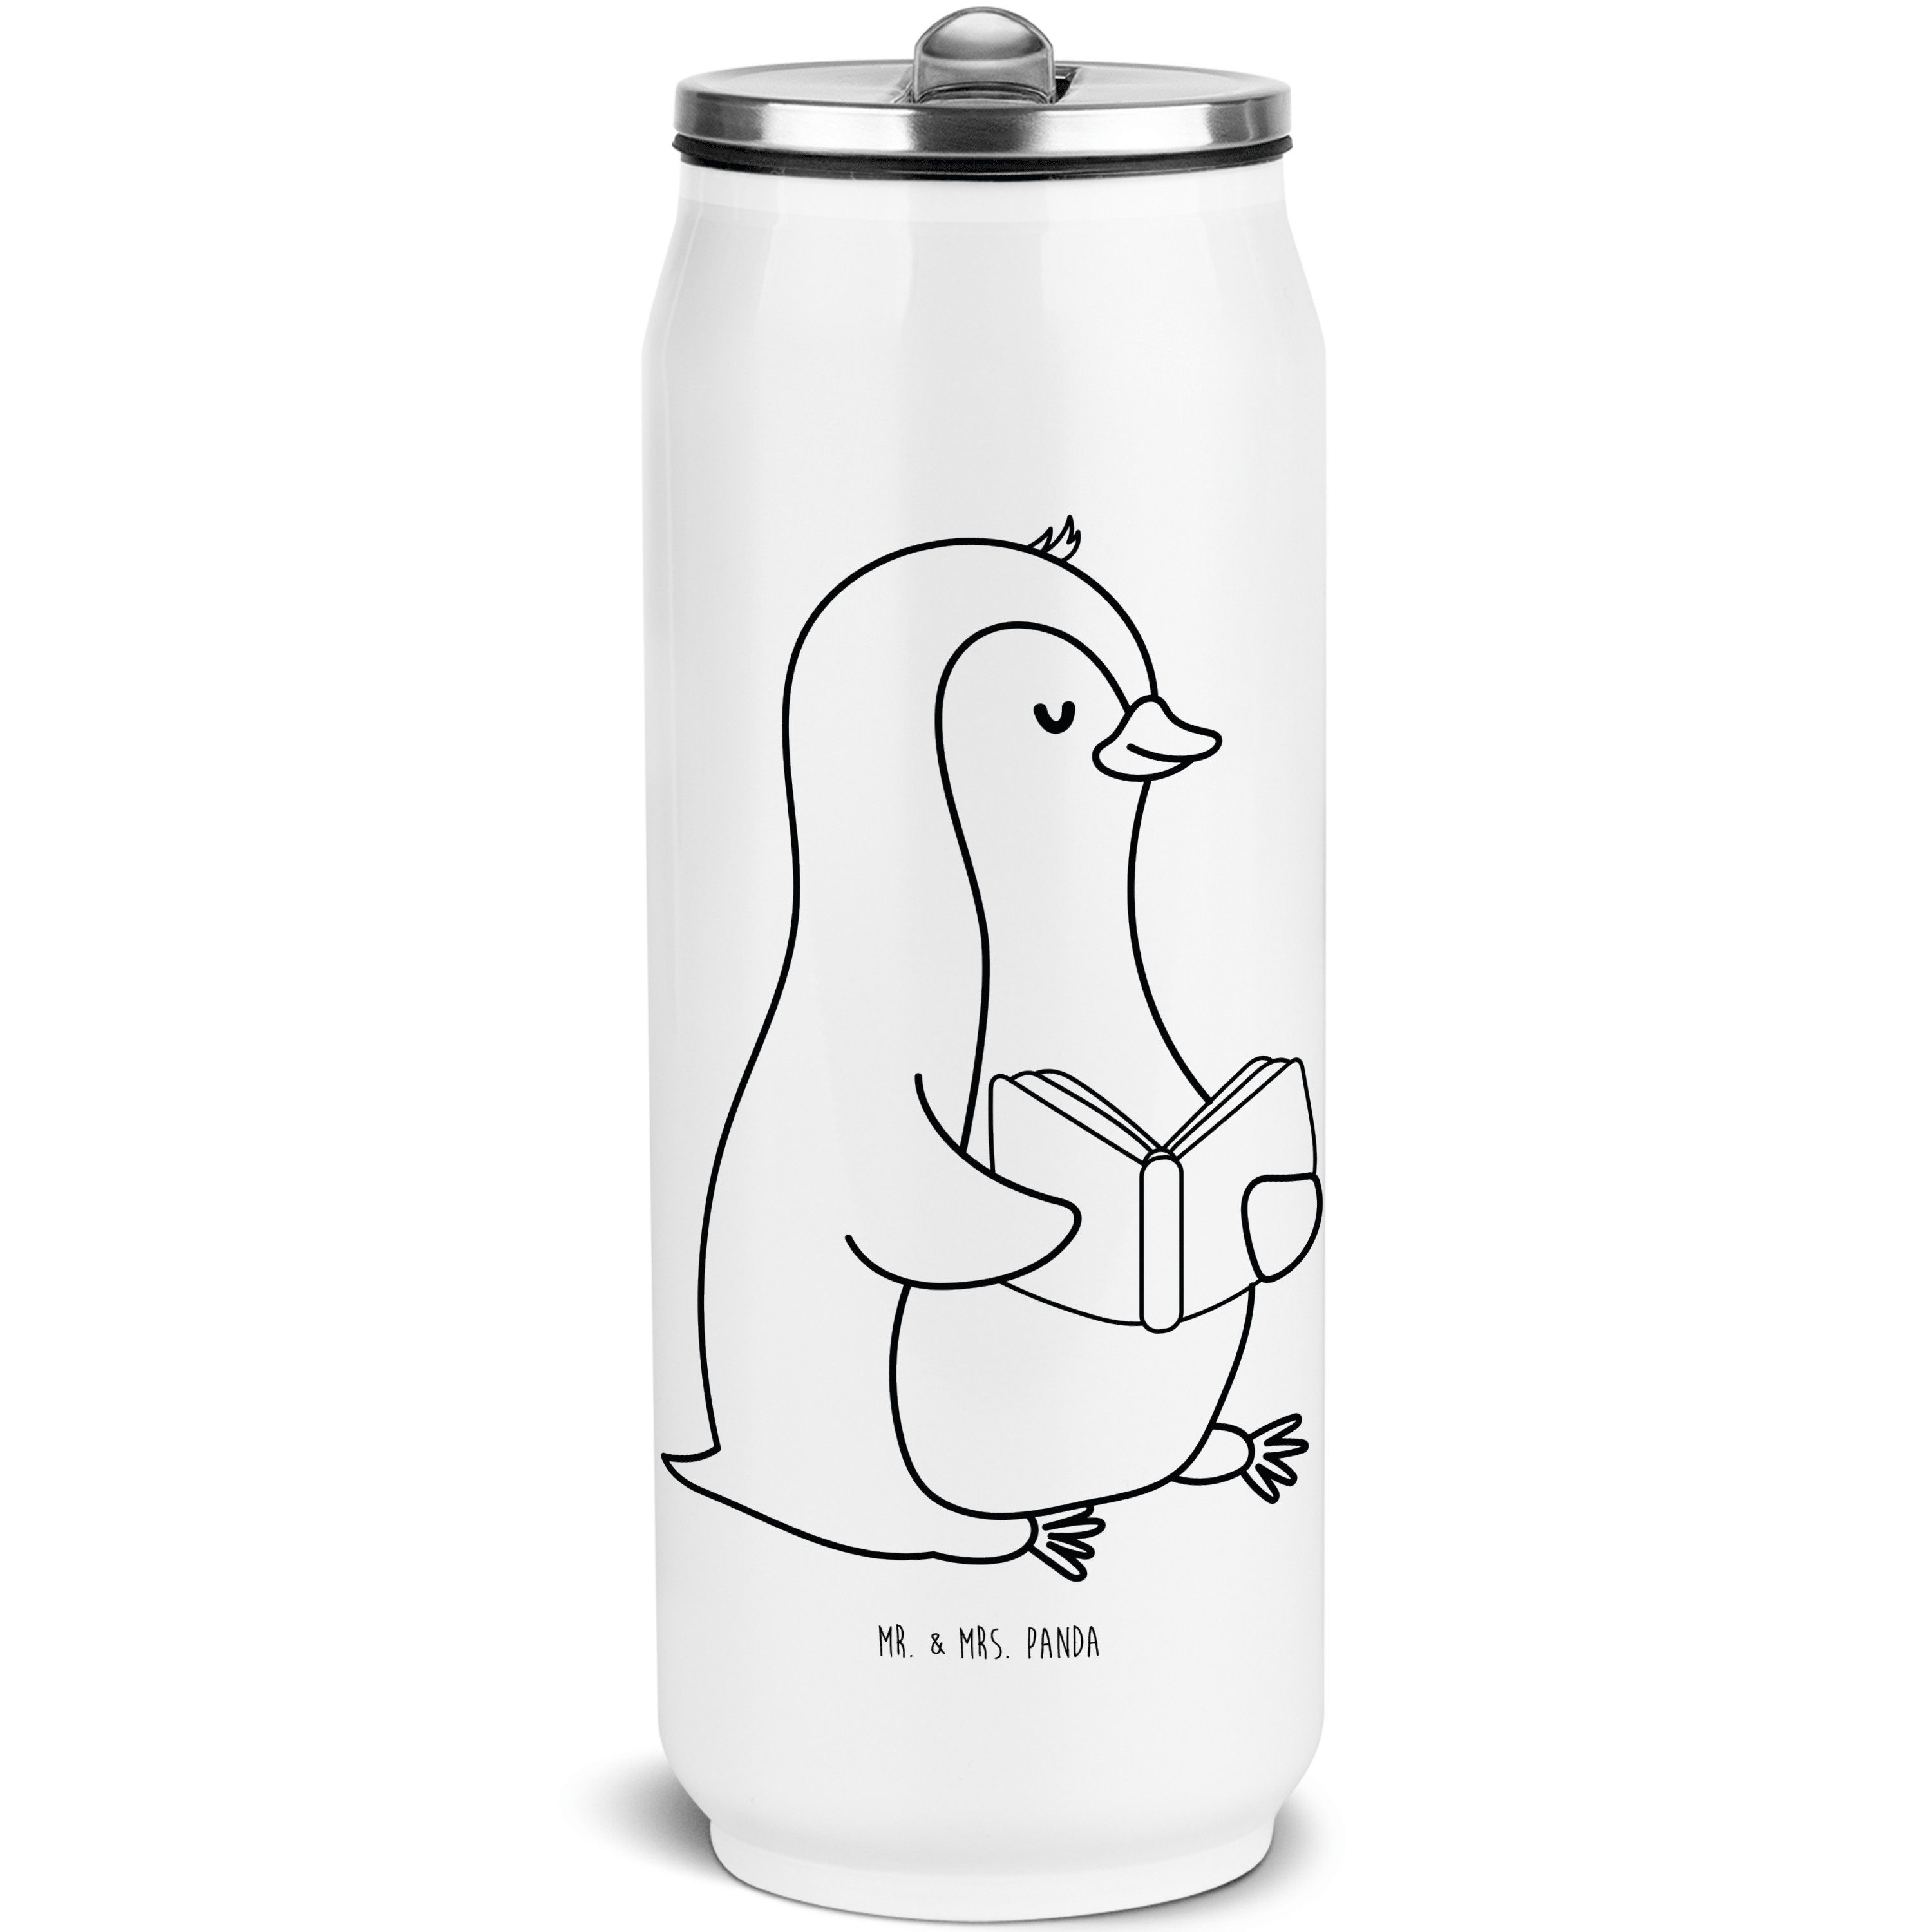 Mr. & Mrs. Panda Isolierflasche Pinguin Buch - Weiß - Geschenk, Trinkflasche, Pause, Getränkedose, Pi, integrierter Trinkhalm